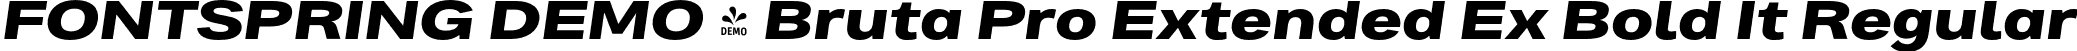 FONTSPRING DEMO - Bruta Pro Extended Ex Bold It Regular font | Fontspring-DEMO-brutaproextended-extrabolditalic.otf